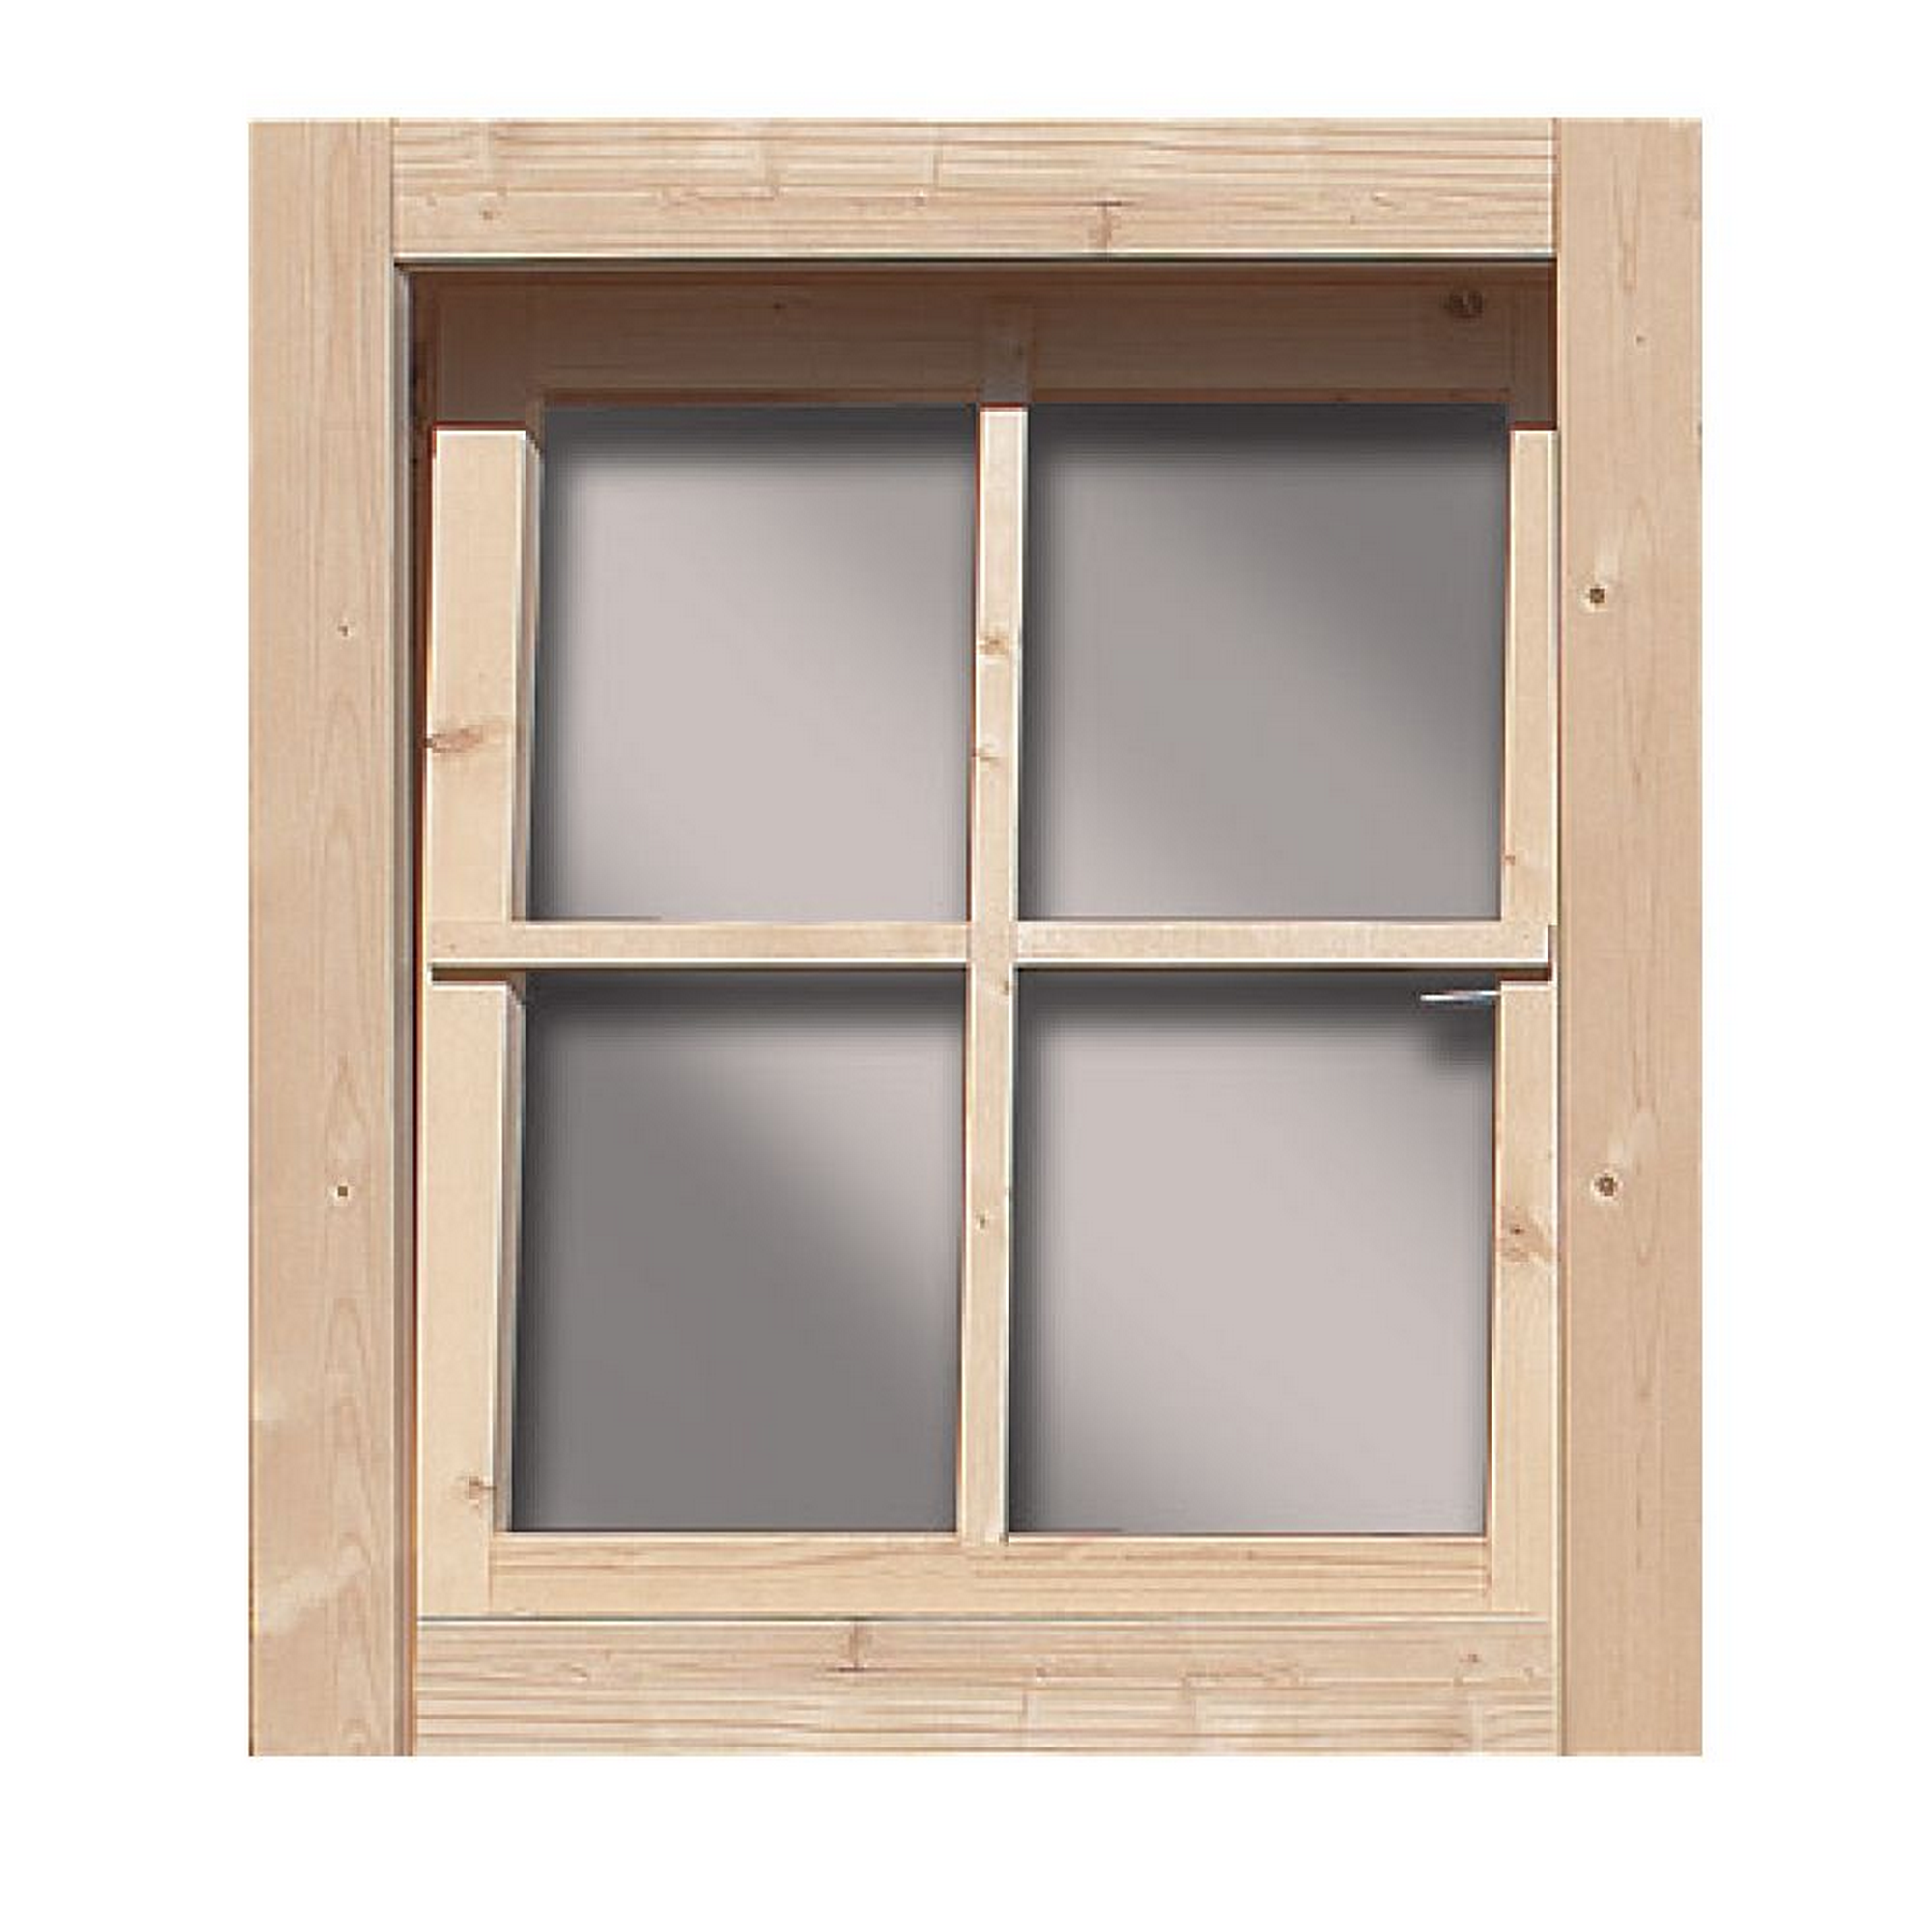 Dreh-/Kippfenster Fichte naturbelassen 69 x 80 x 6 cm, für Gartenhäuser 28 mm + product picture